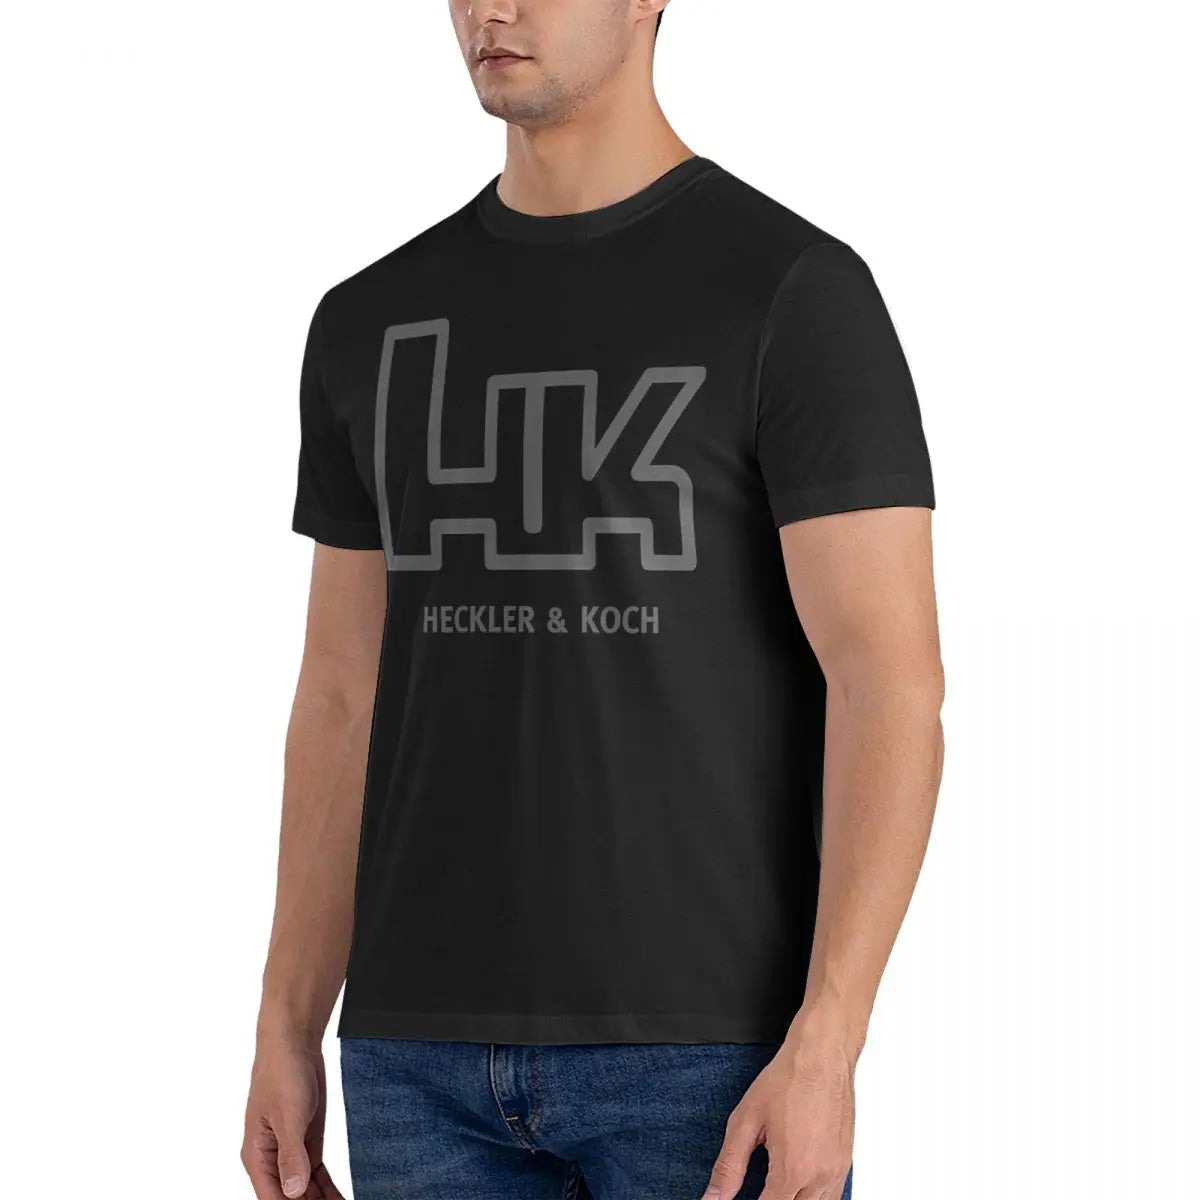 Heckler Koch HK T shirt